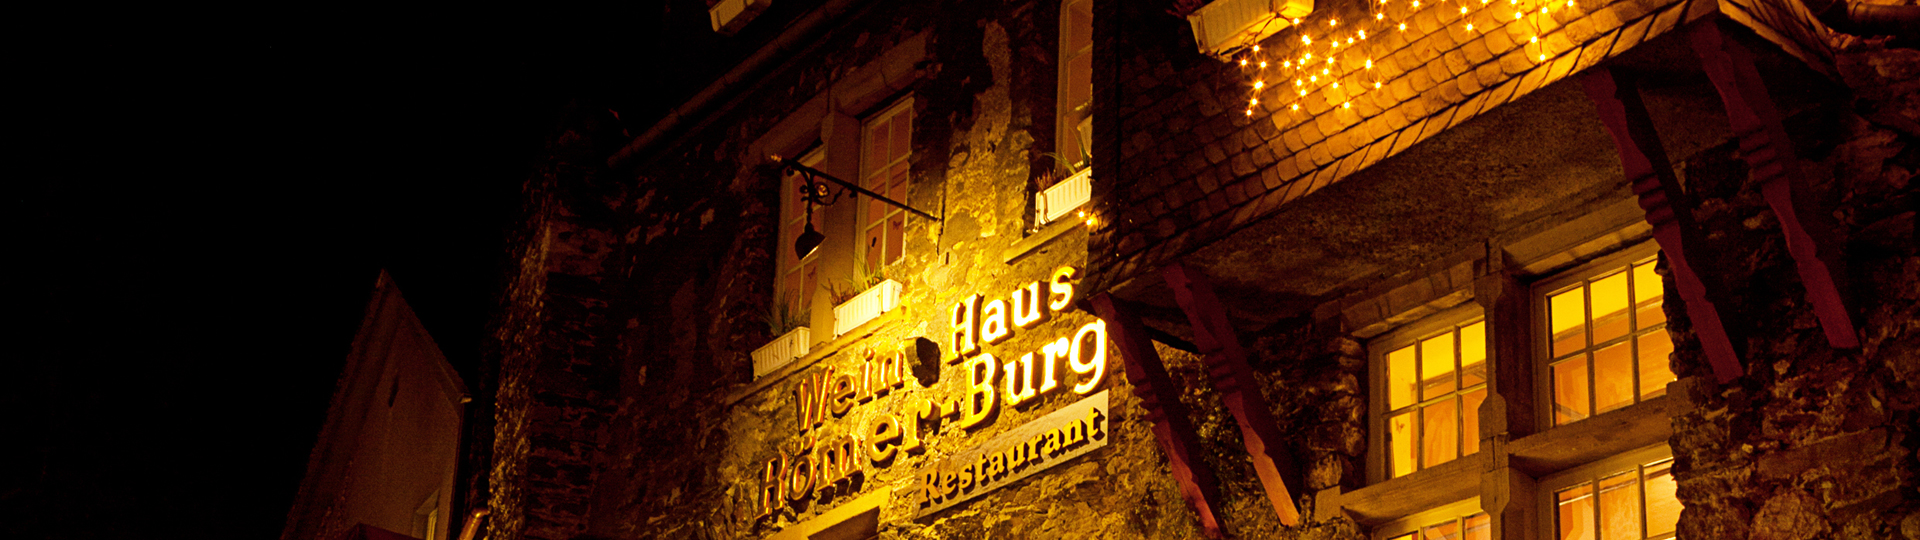 Weinhaus & Restaurant Römerburg bei Nacht